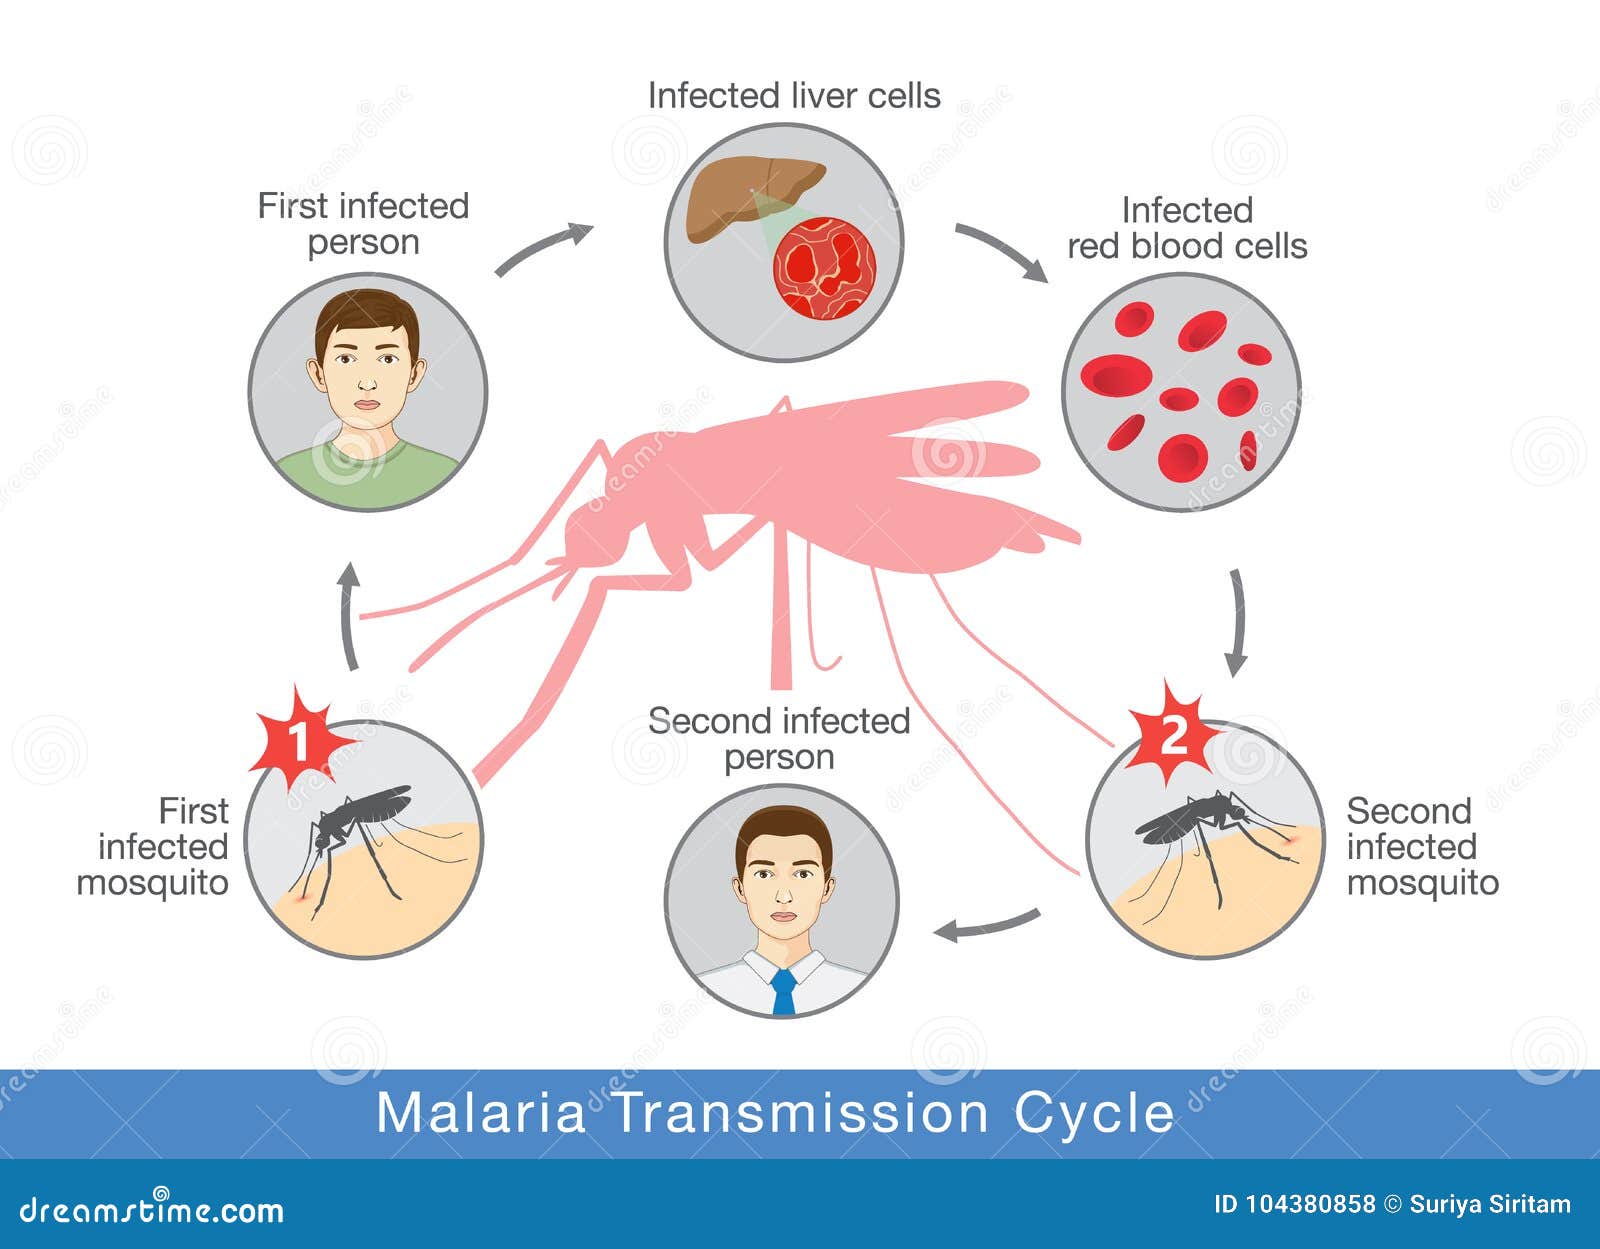 Механизм заражения малярией. Малярия механизм передачи инфекции. Механизм передачи малярийного плазмодия. Пути передачи при малярии. Заражение человека малярией происходит